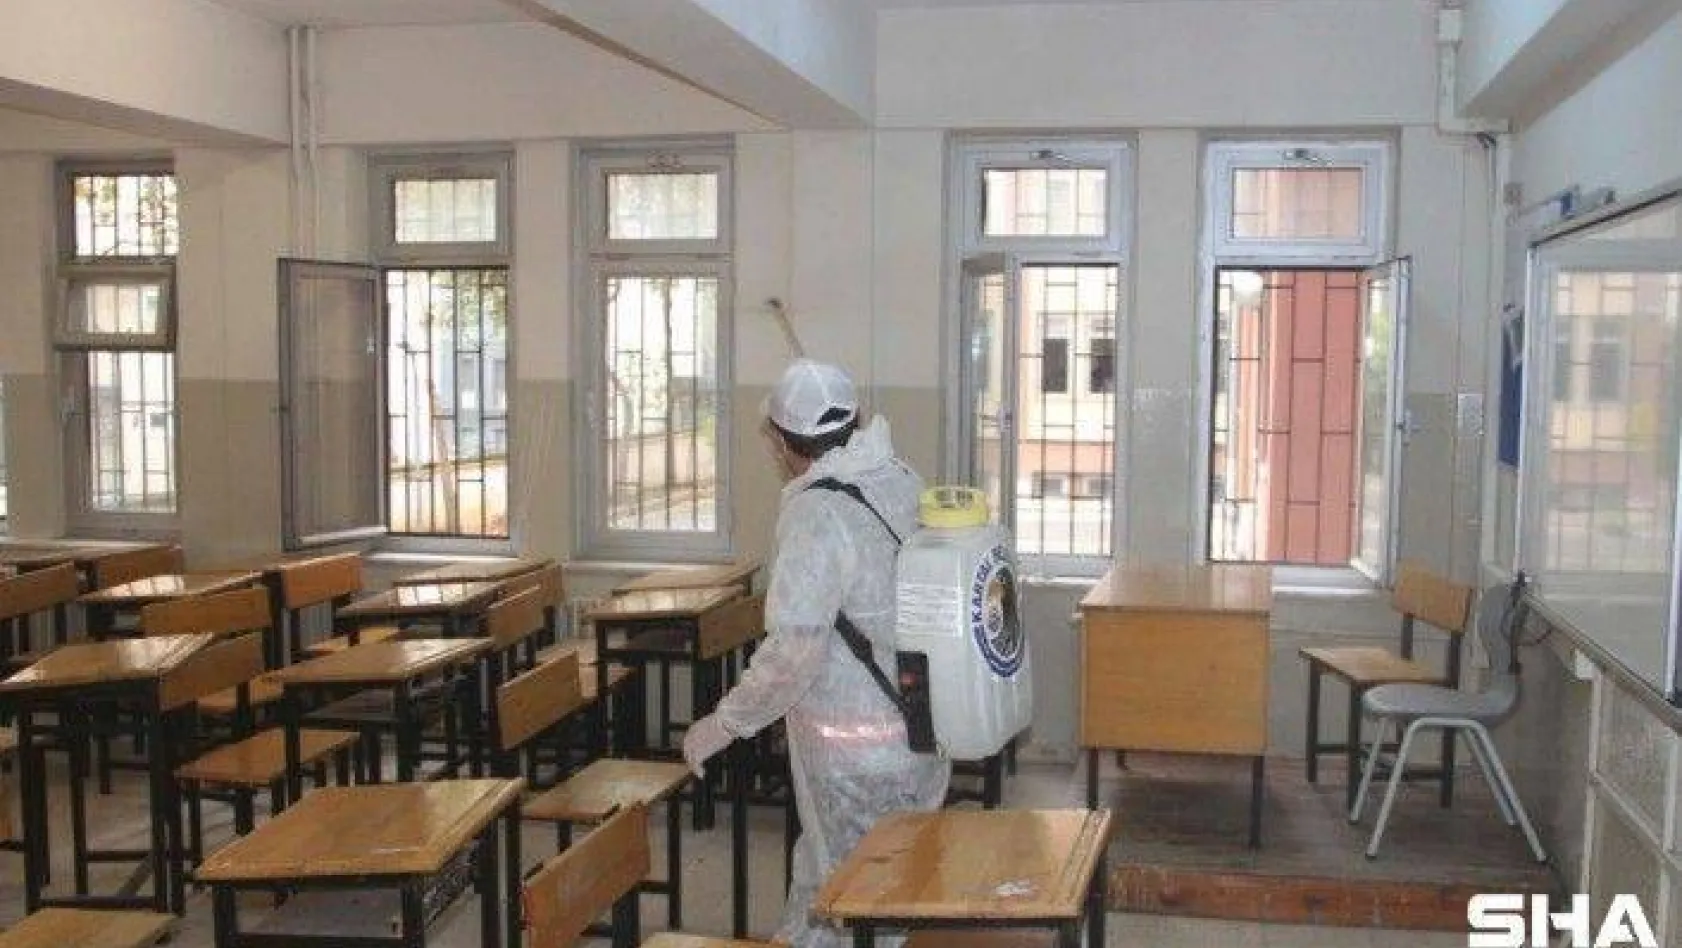 Kartal Belediyesi, öğrencileri ile buluşacak okulları dezenfekte ediyor